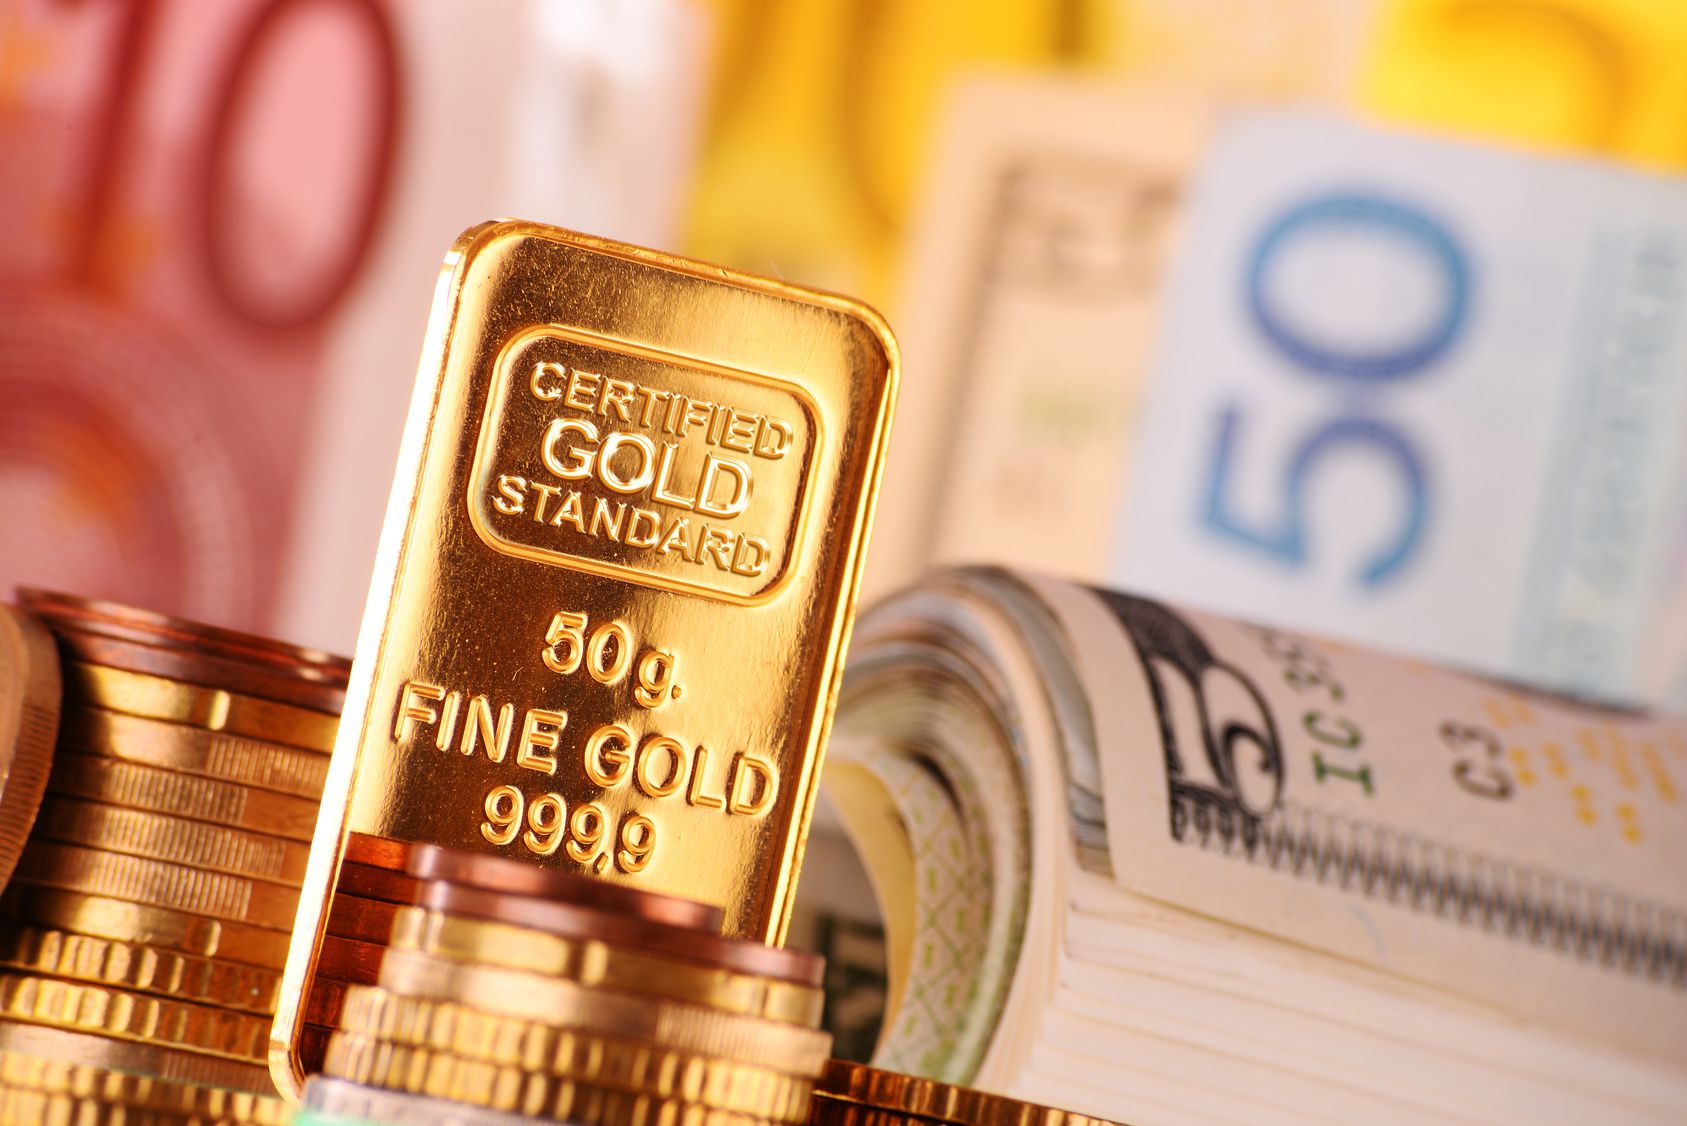 افزایش قیمت طلا با توقف رشد نرخ بهره در آمریکا/ اونس طلا در مسیر ۱۳۰۰دلاری شدن است